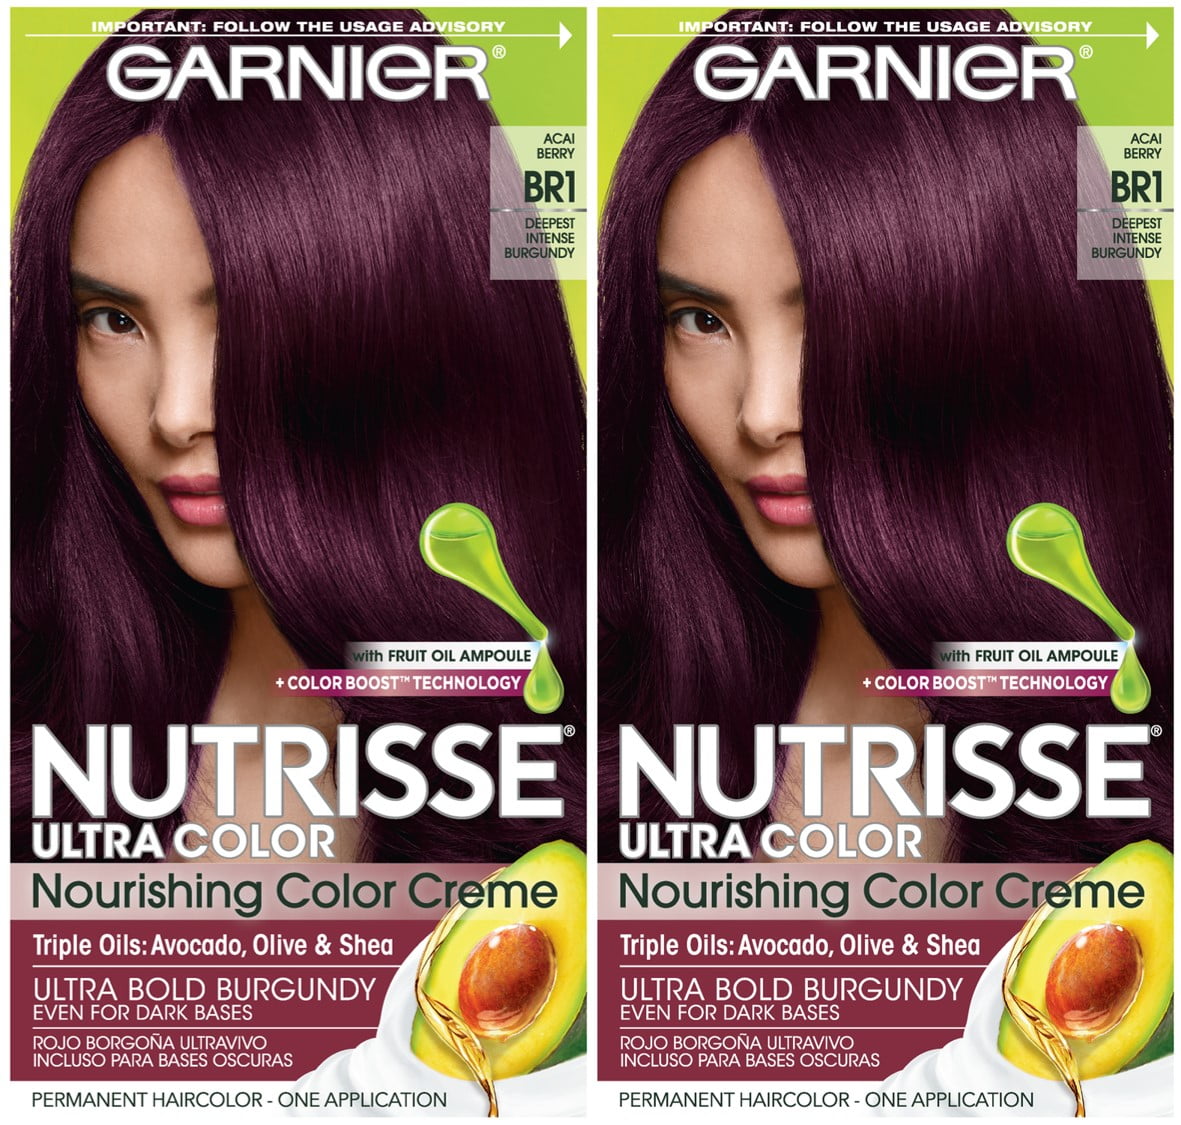 Garnier nutrisse ultra color nourishing hair color creme, br1 deepest inten...